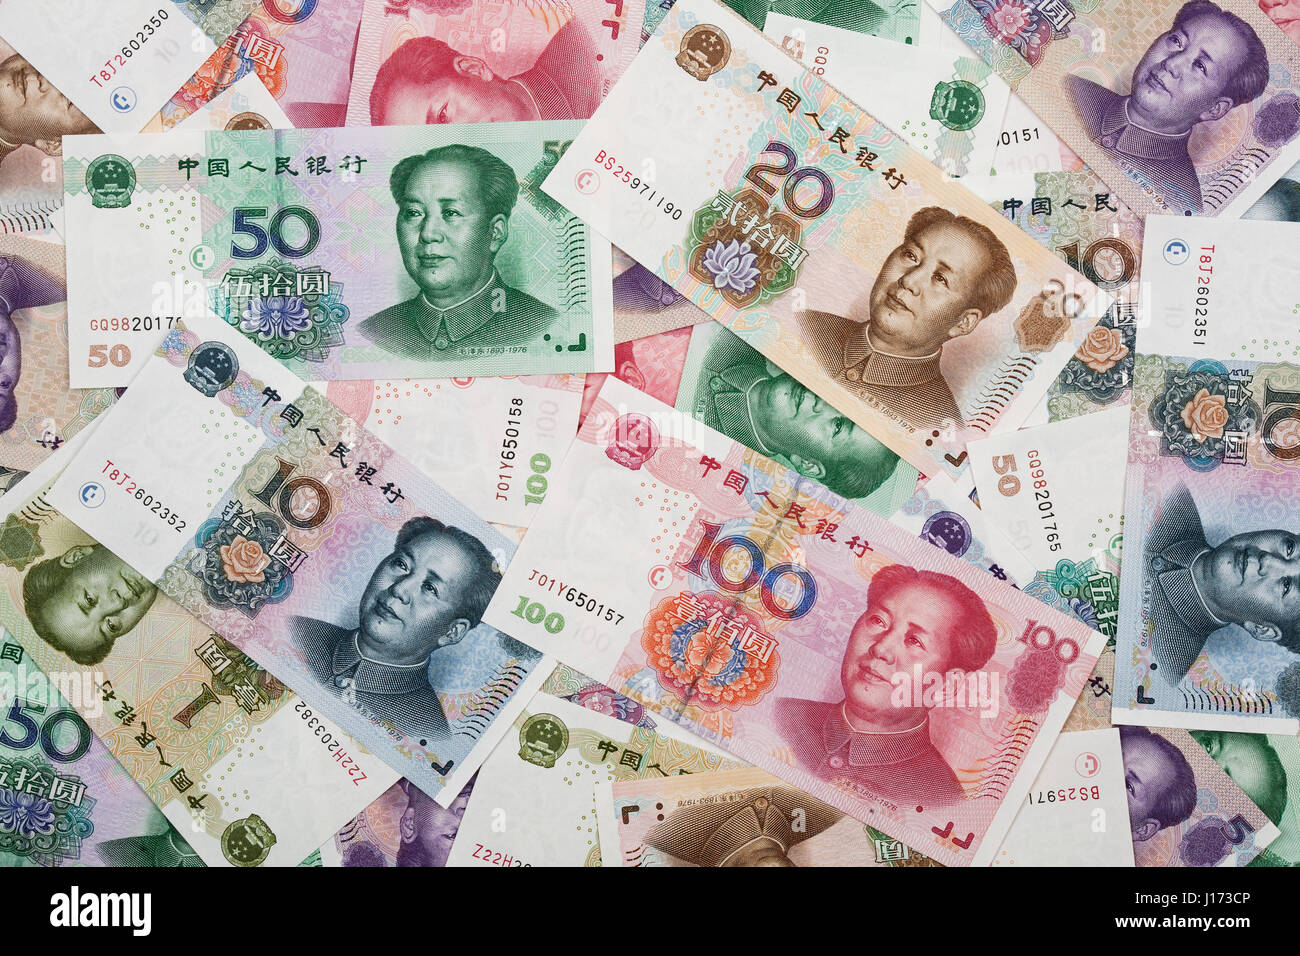 Contexte collage de billets de banque ou RMB chinois Yuan avec le président Mao sur l'avant de chaque projet de loi Banque D'Images